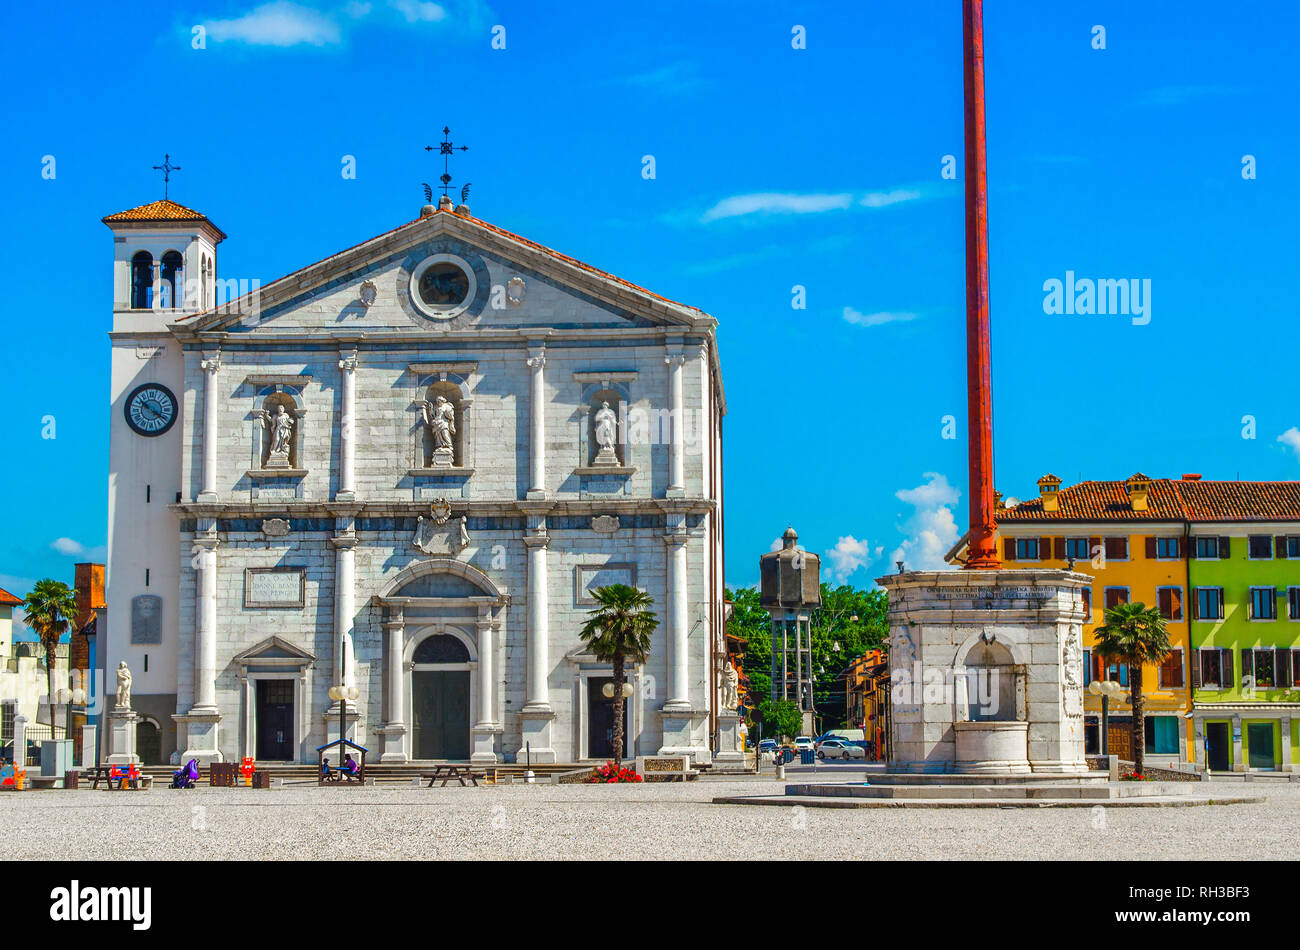 Cathédrale - Palmanova Udine province - région du Frioul-Vénétie Julienne - Italie Banque D'Images